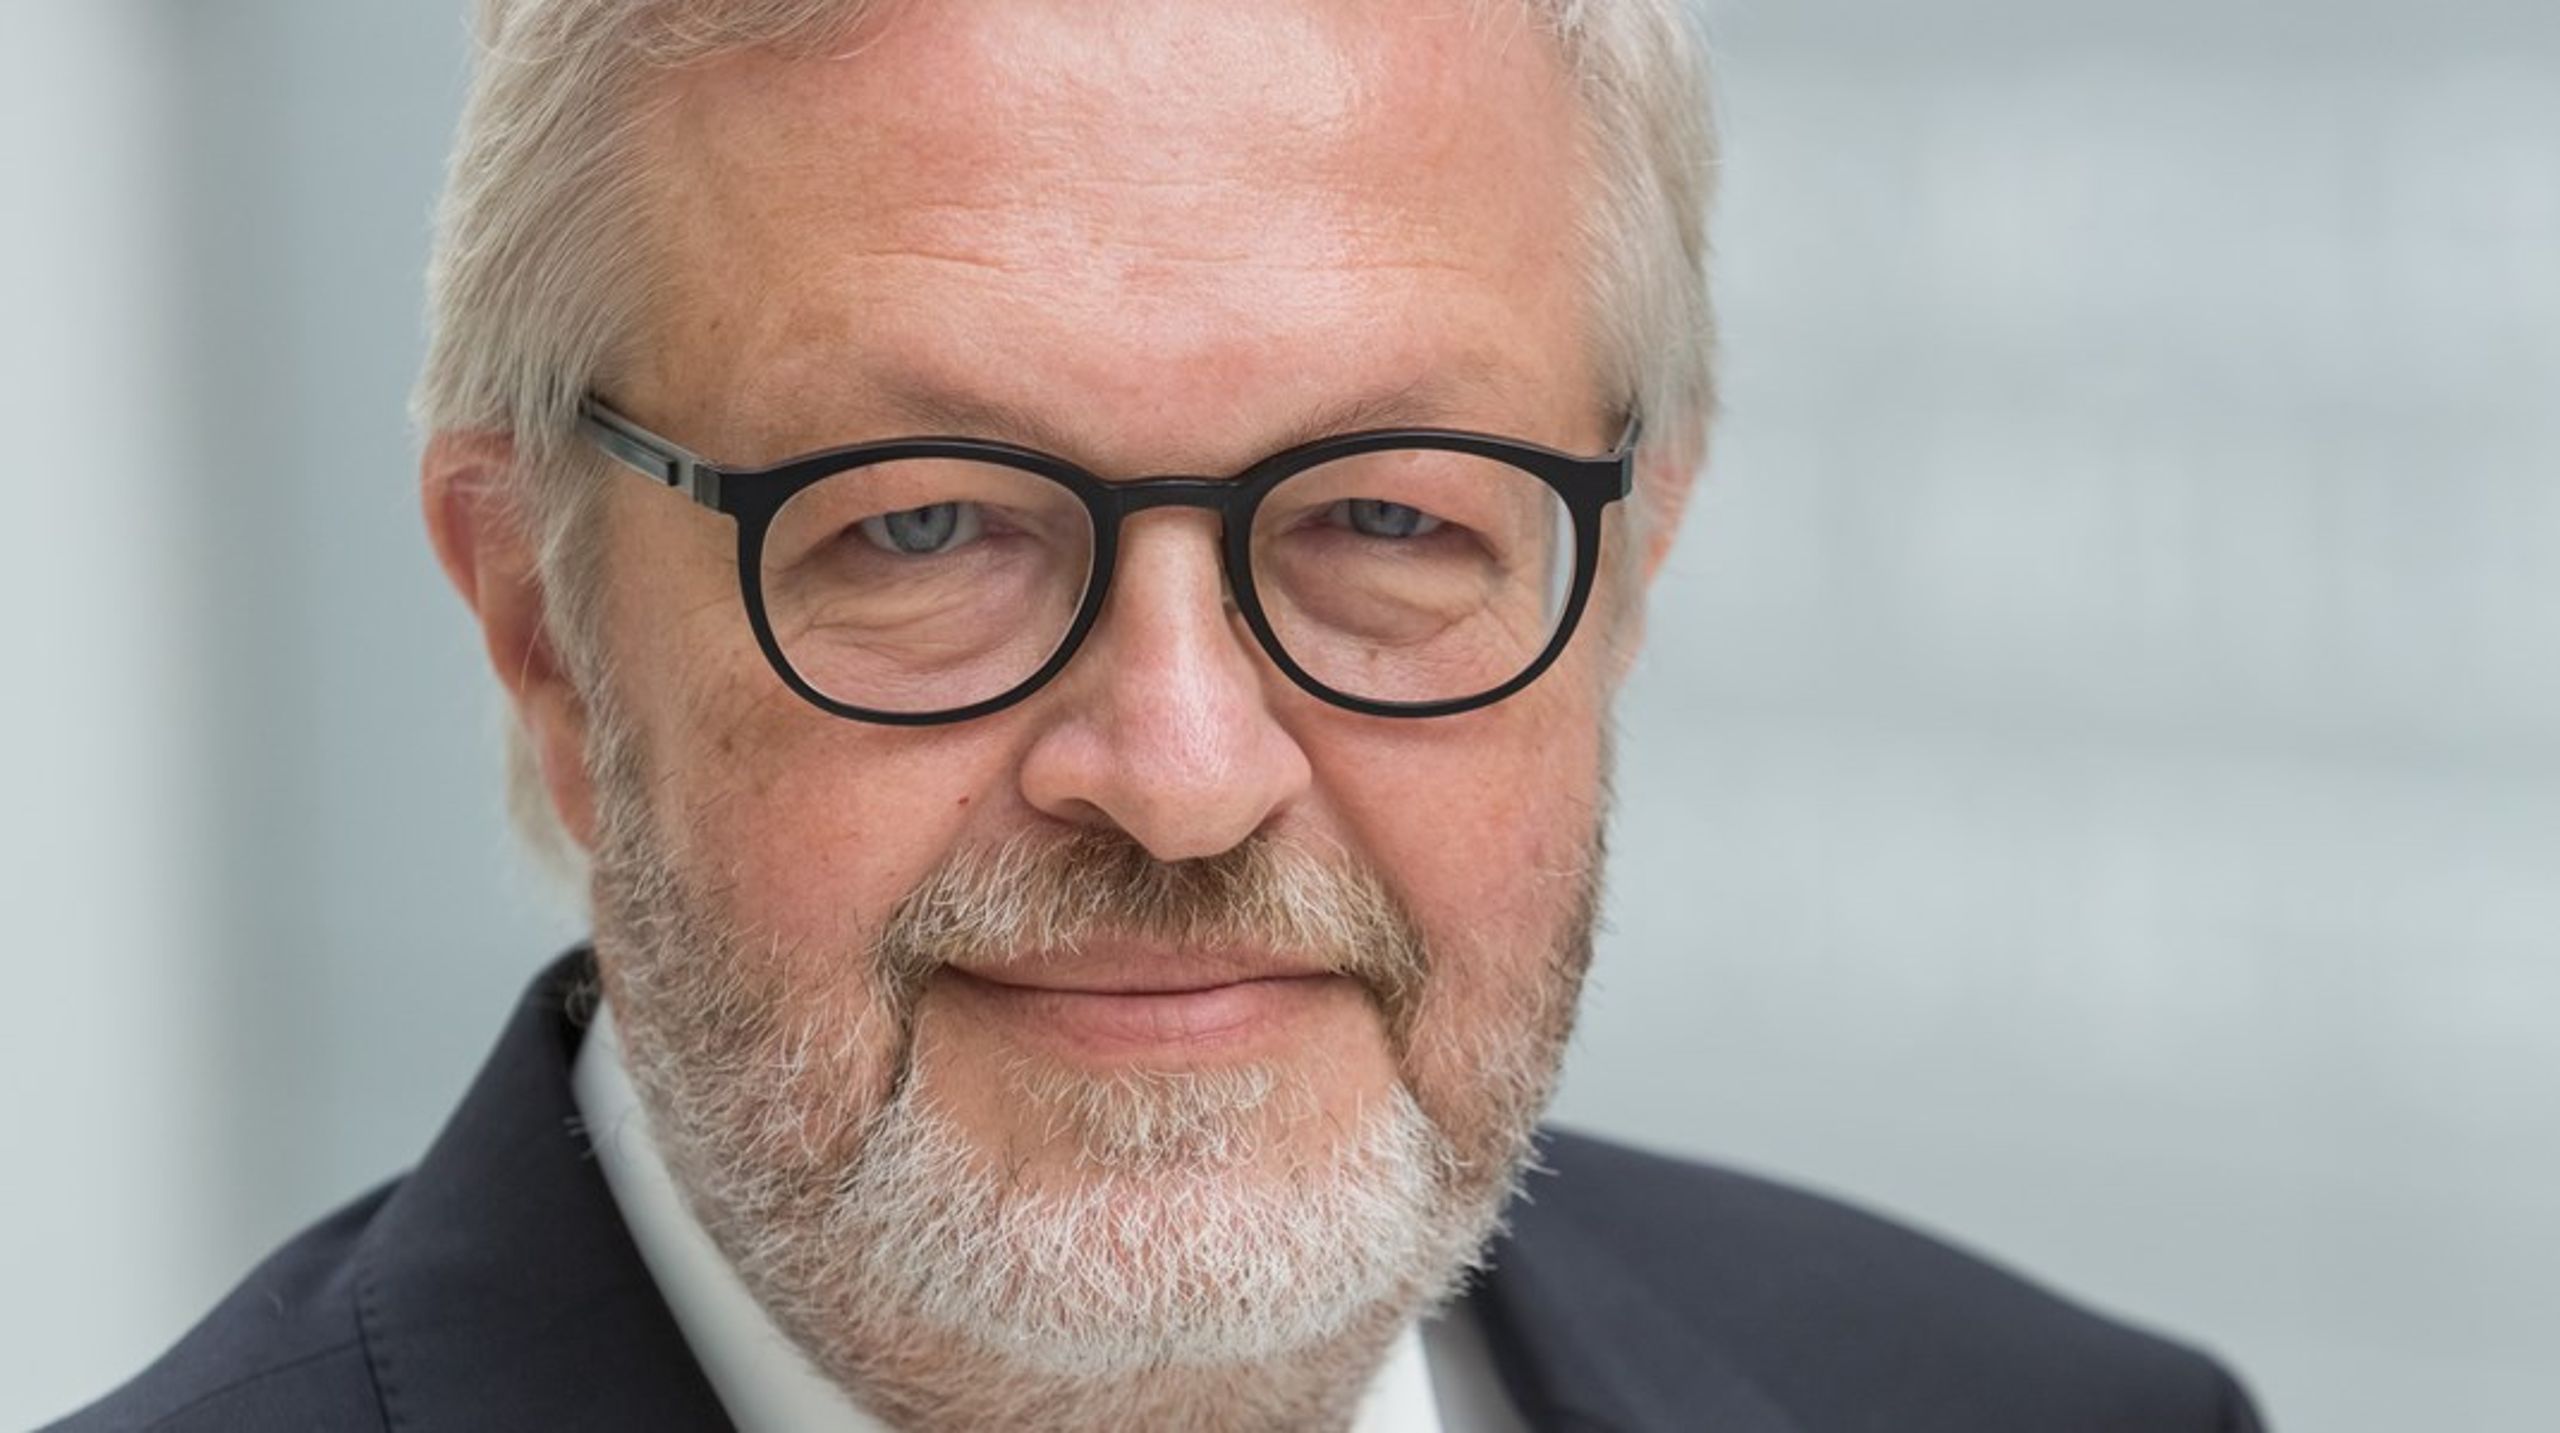 Danmarks nuværende ambassadør i OECD er blevet valgt som ny formand for bistandsorganisationen DAC.